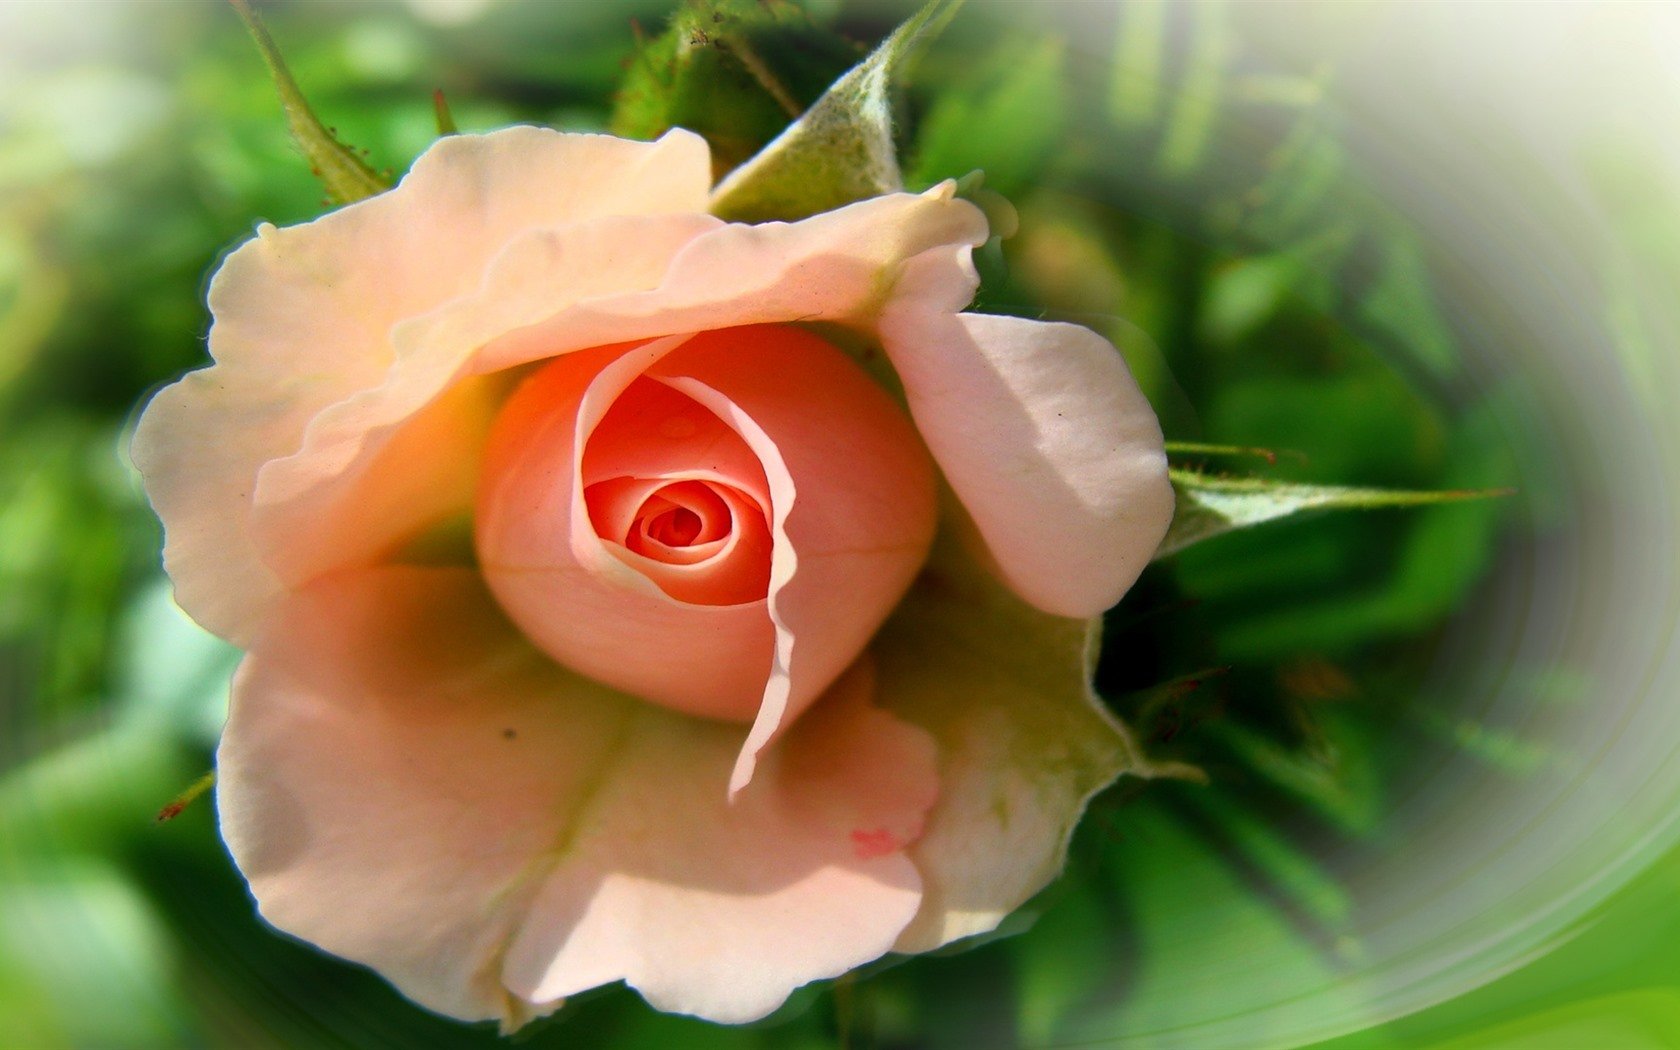 Rose is beautiful. Красивые цветы. Красивые цветочки. Прекрасные цветы. Очень красивые цветы.